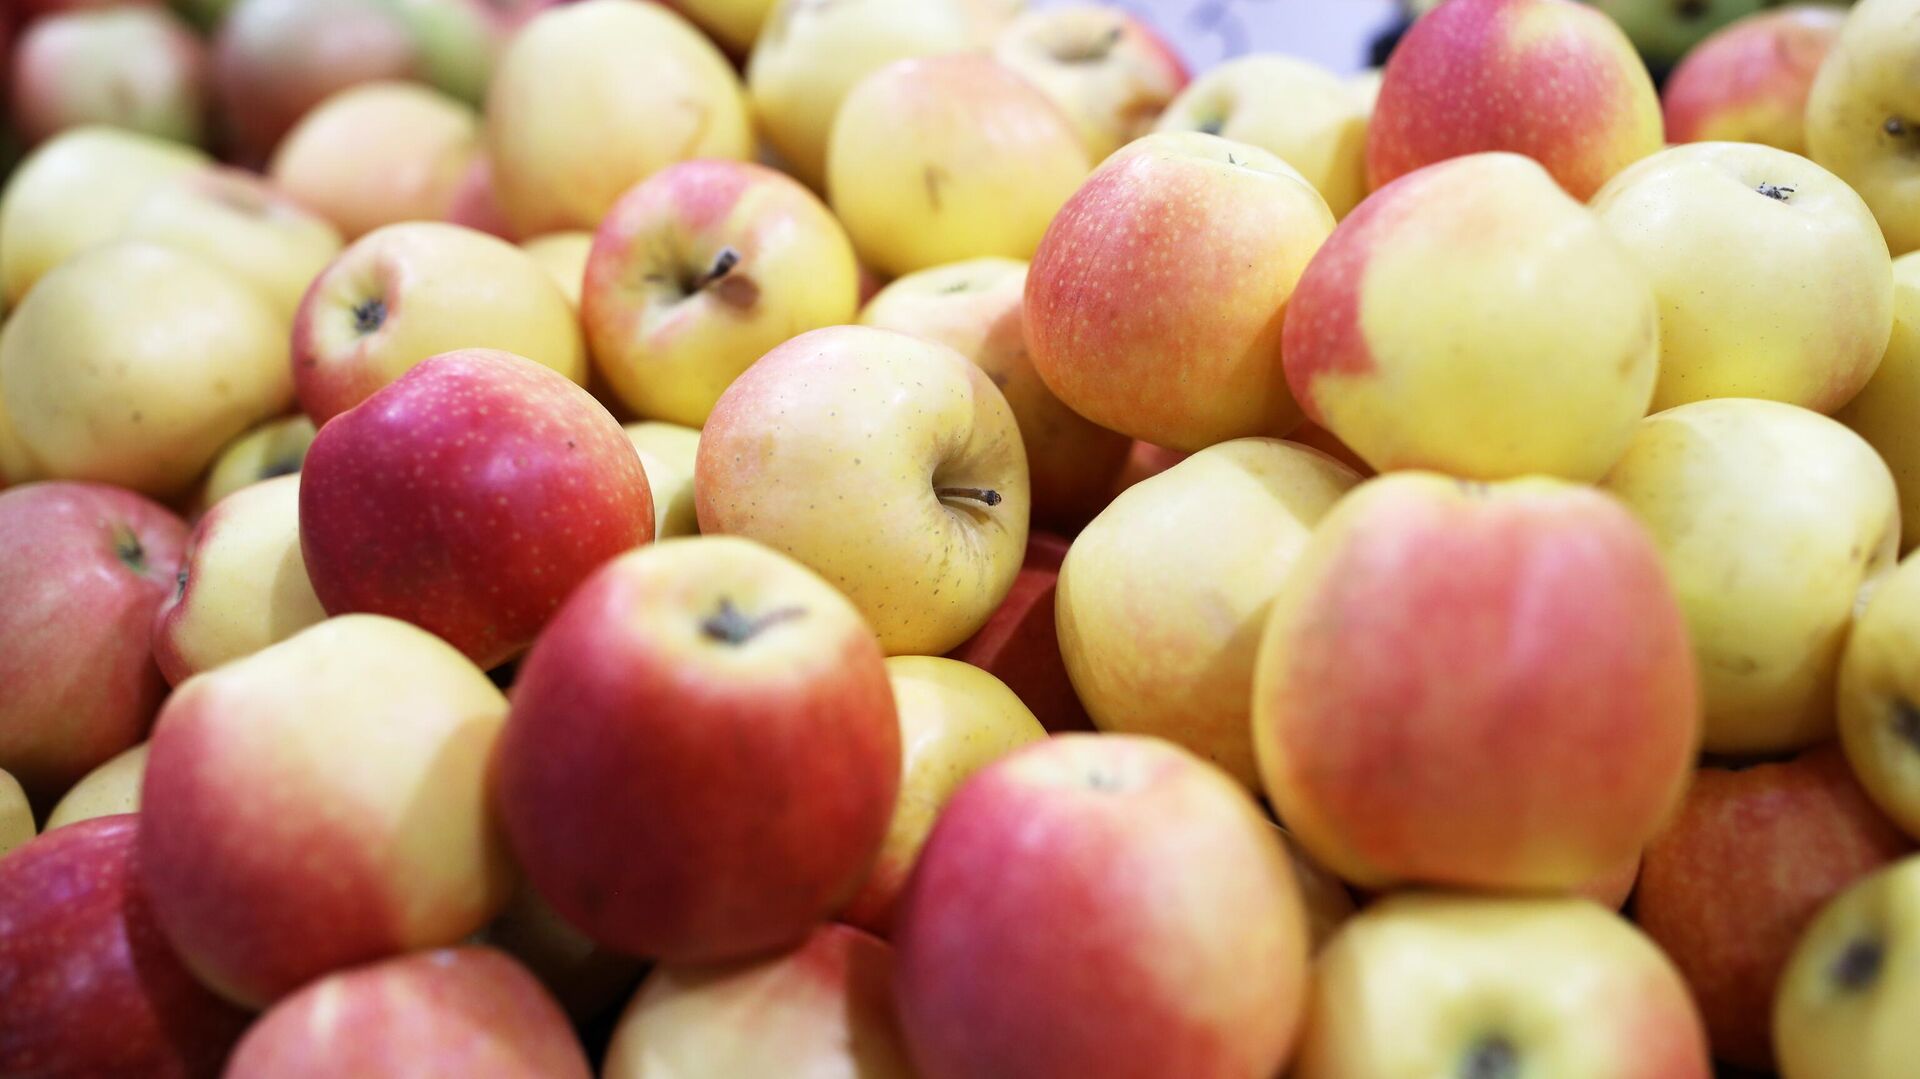 "ИноСМИ": яблоки необходимо есть с кожурой, которая содержит большую часть клетчатки